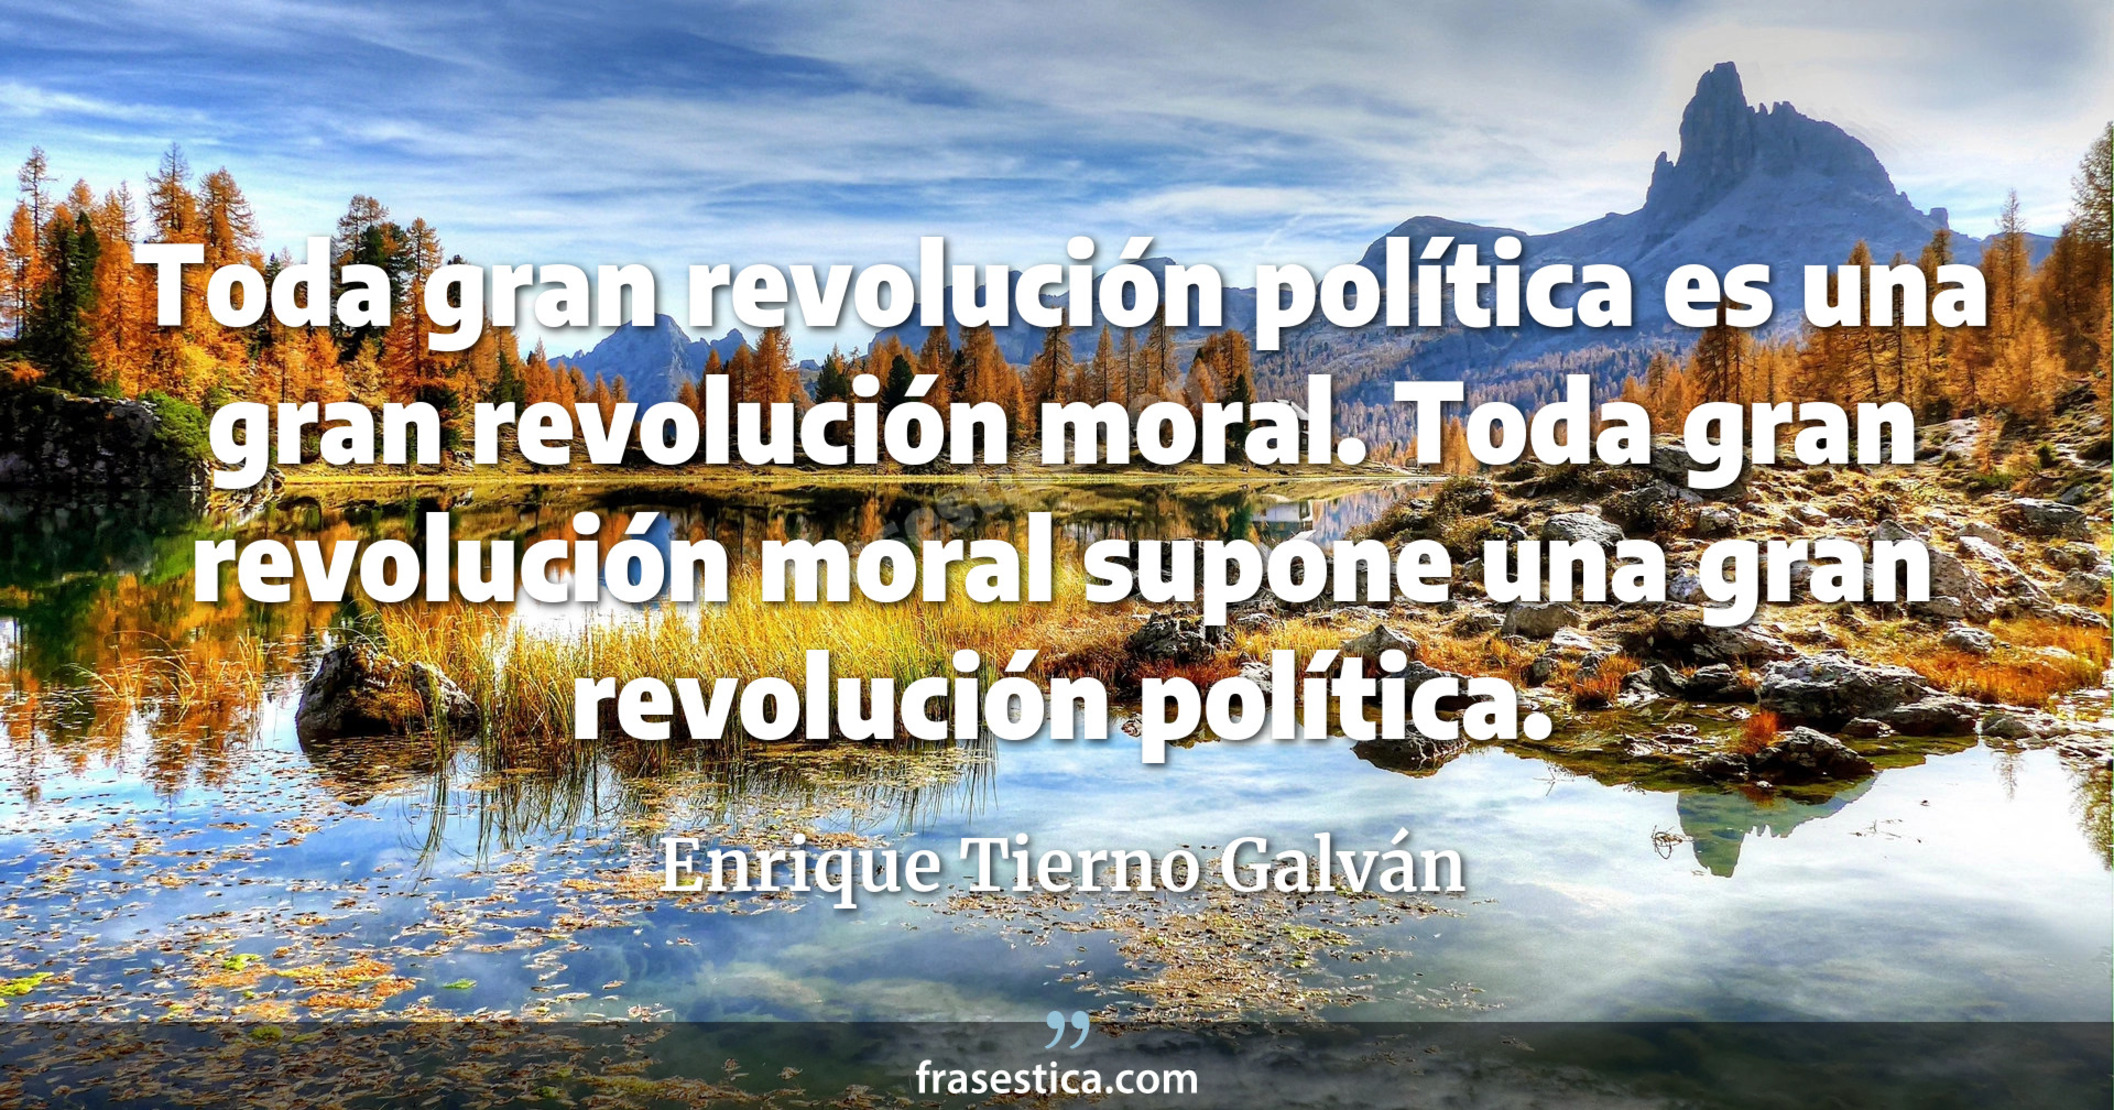 Toda gran revolución política es una gran revolución moral. Toda gran revolución moral supone una gran revolución política. - Enrique Tierno Galván